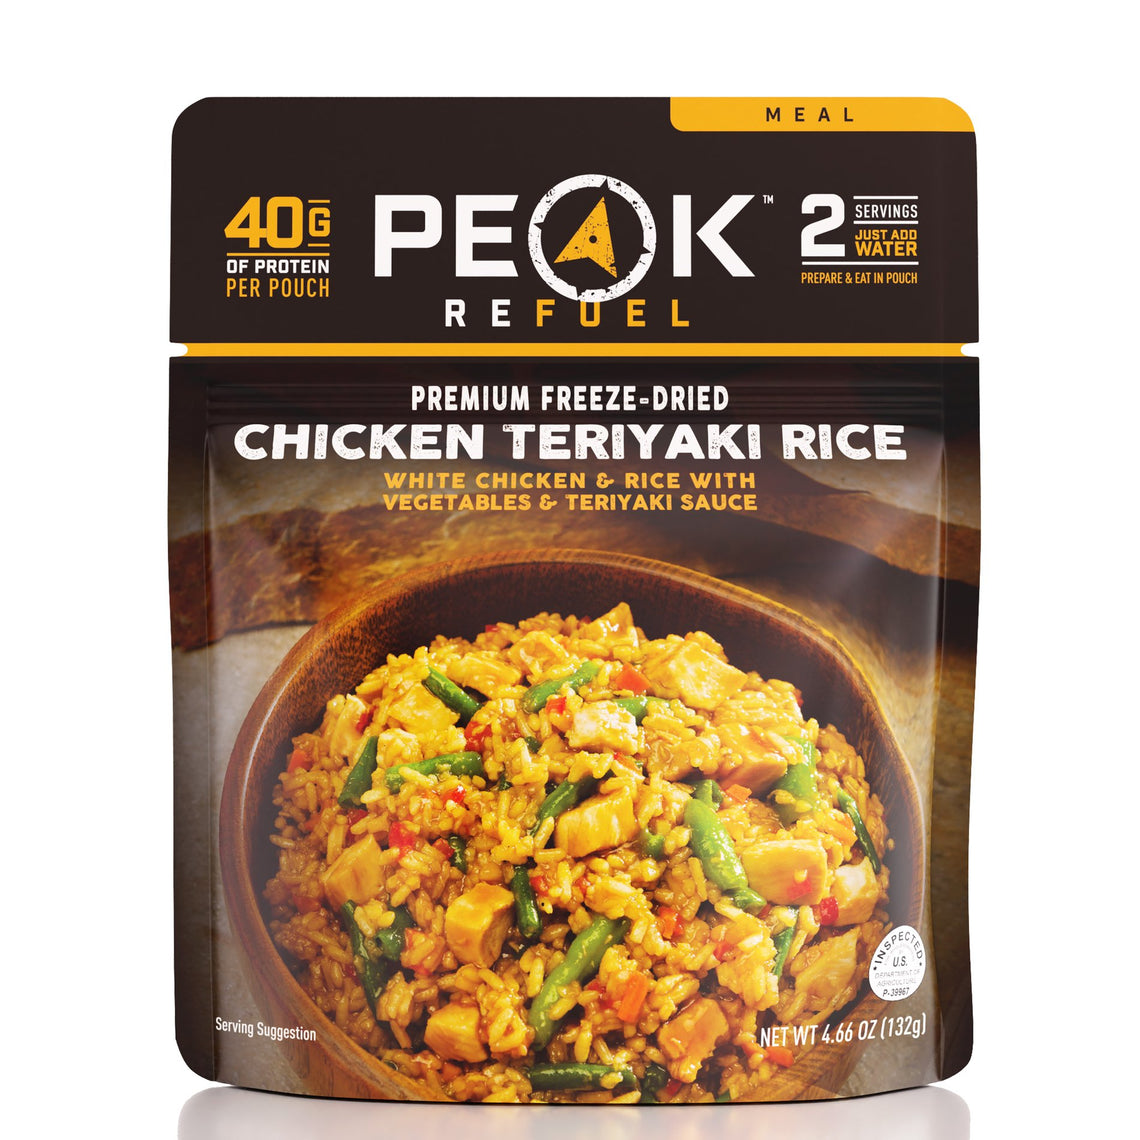 Peak Refuel Teriyaki Chicken and Rice